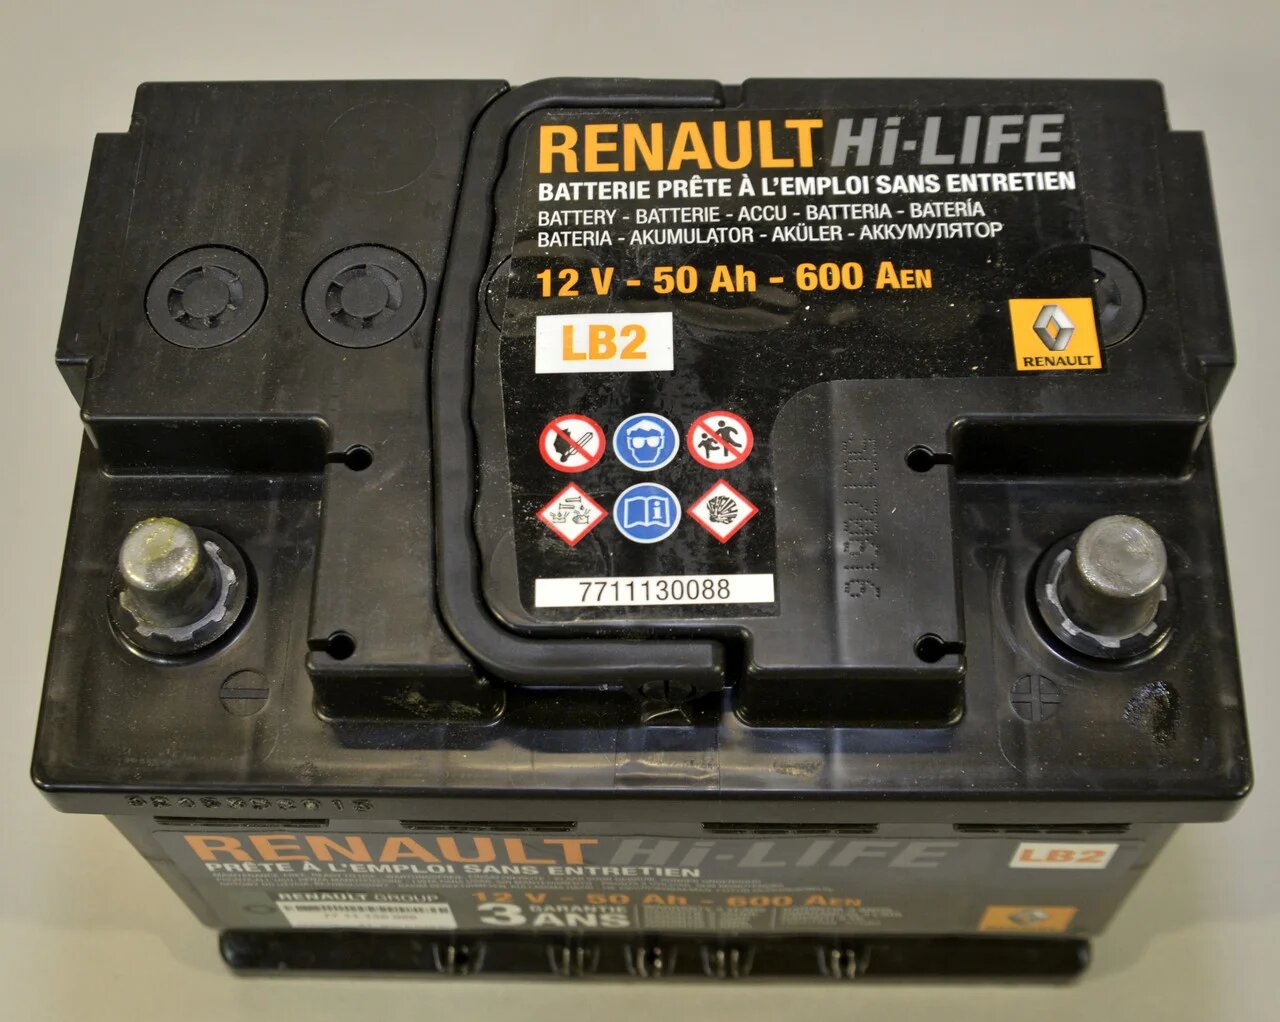 Аккумулятор автомобильный RENAULT ОЕМ LB2 AGM 50Ah 600A (EN) RENAULT 7711130088